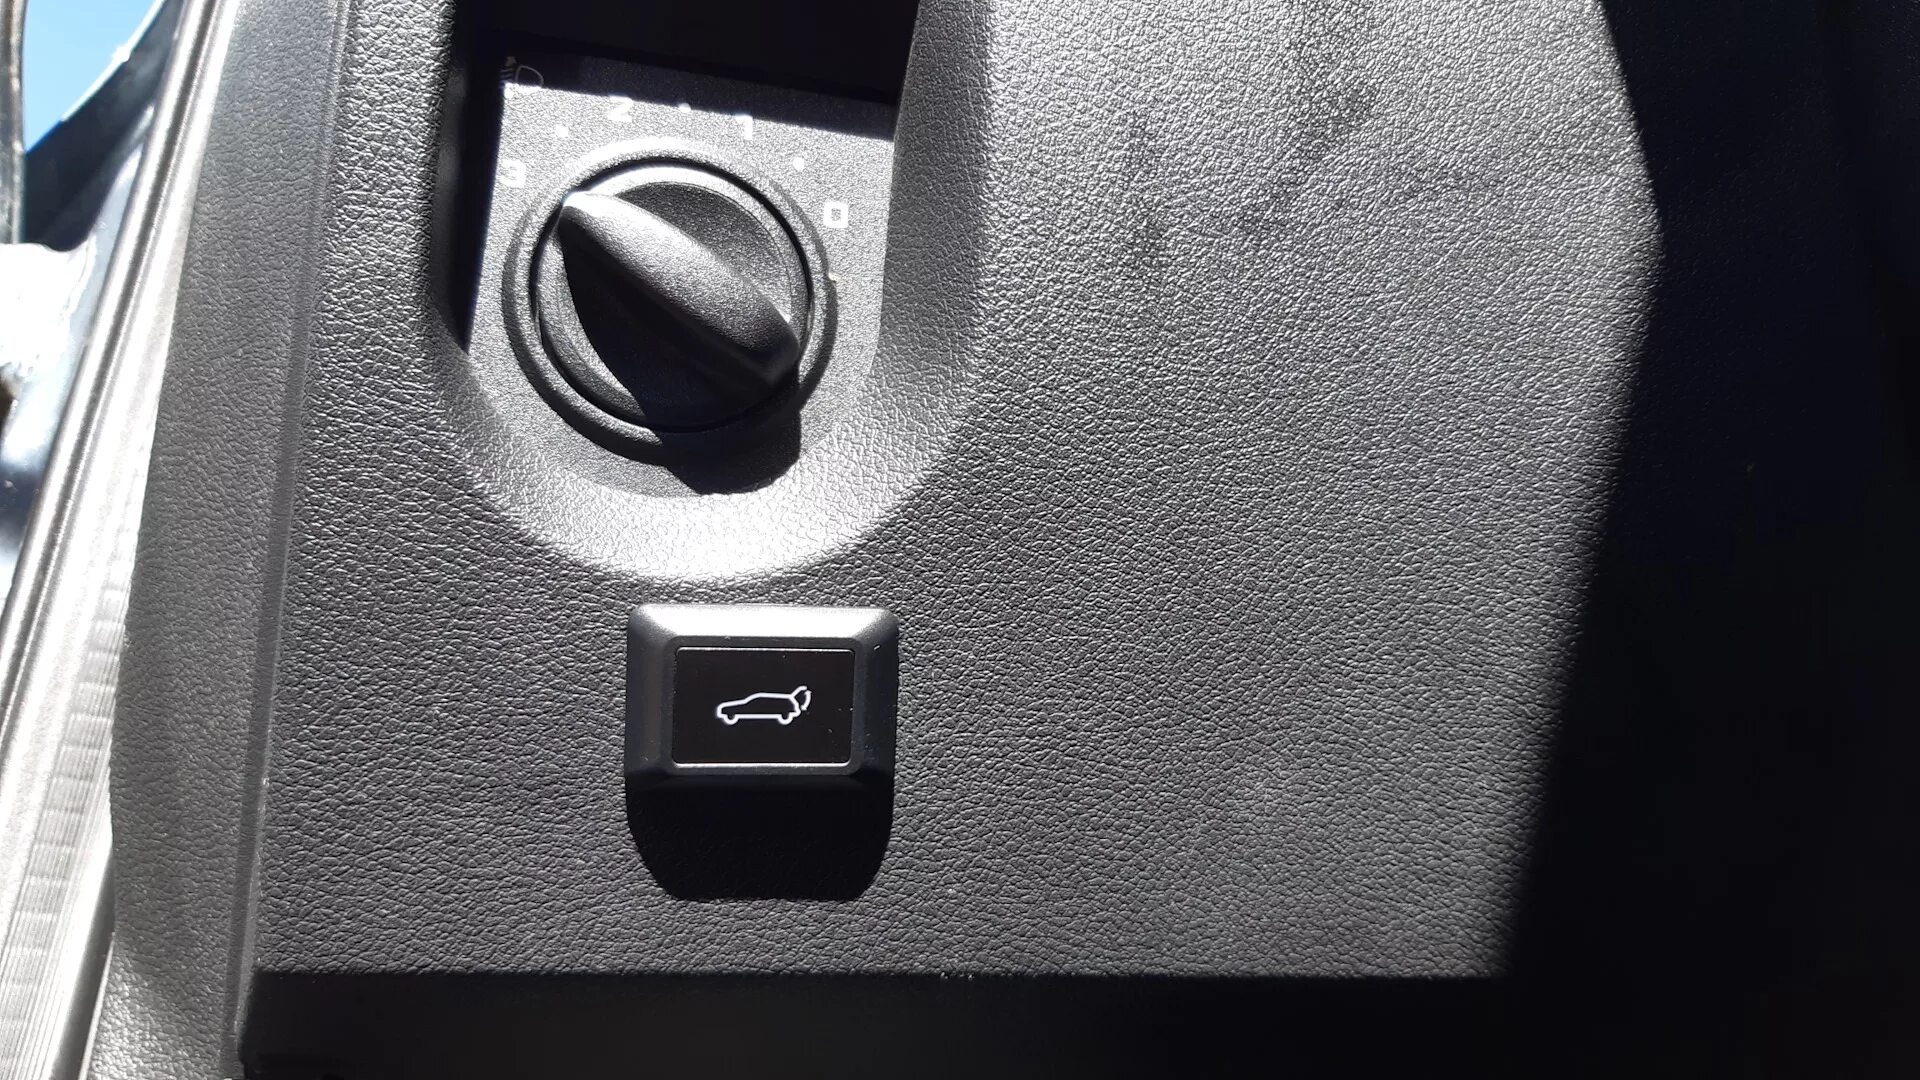 Кнопкой открыть в новом. Кнопка открывания багажника Гранта 1. Кнопка открытия багажника Калина 2. Кнопка открывания багажника Киа соул 2013 года. Кнопка открывания багажника Киа соул 2019.